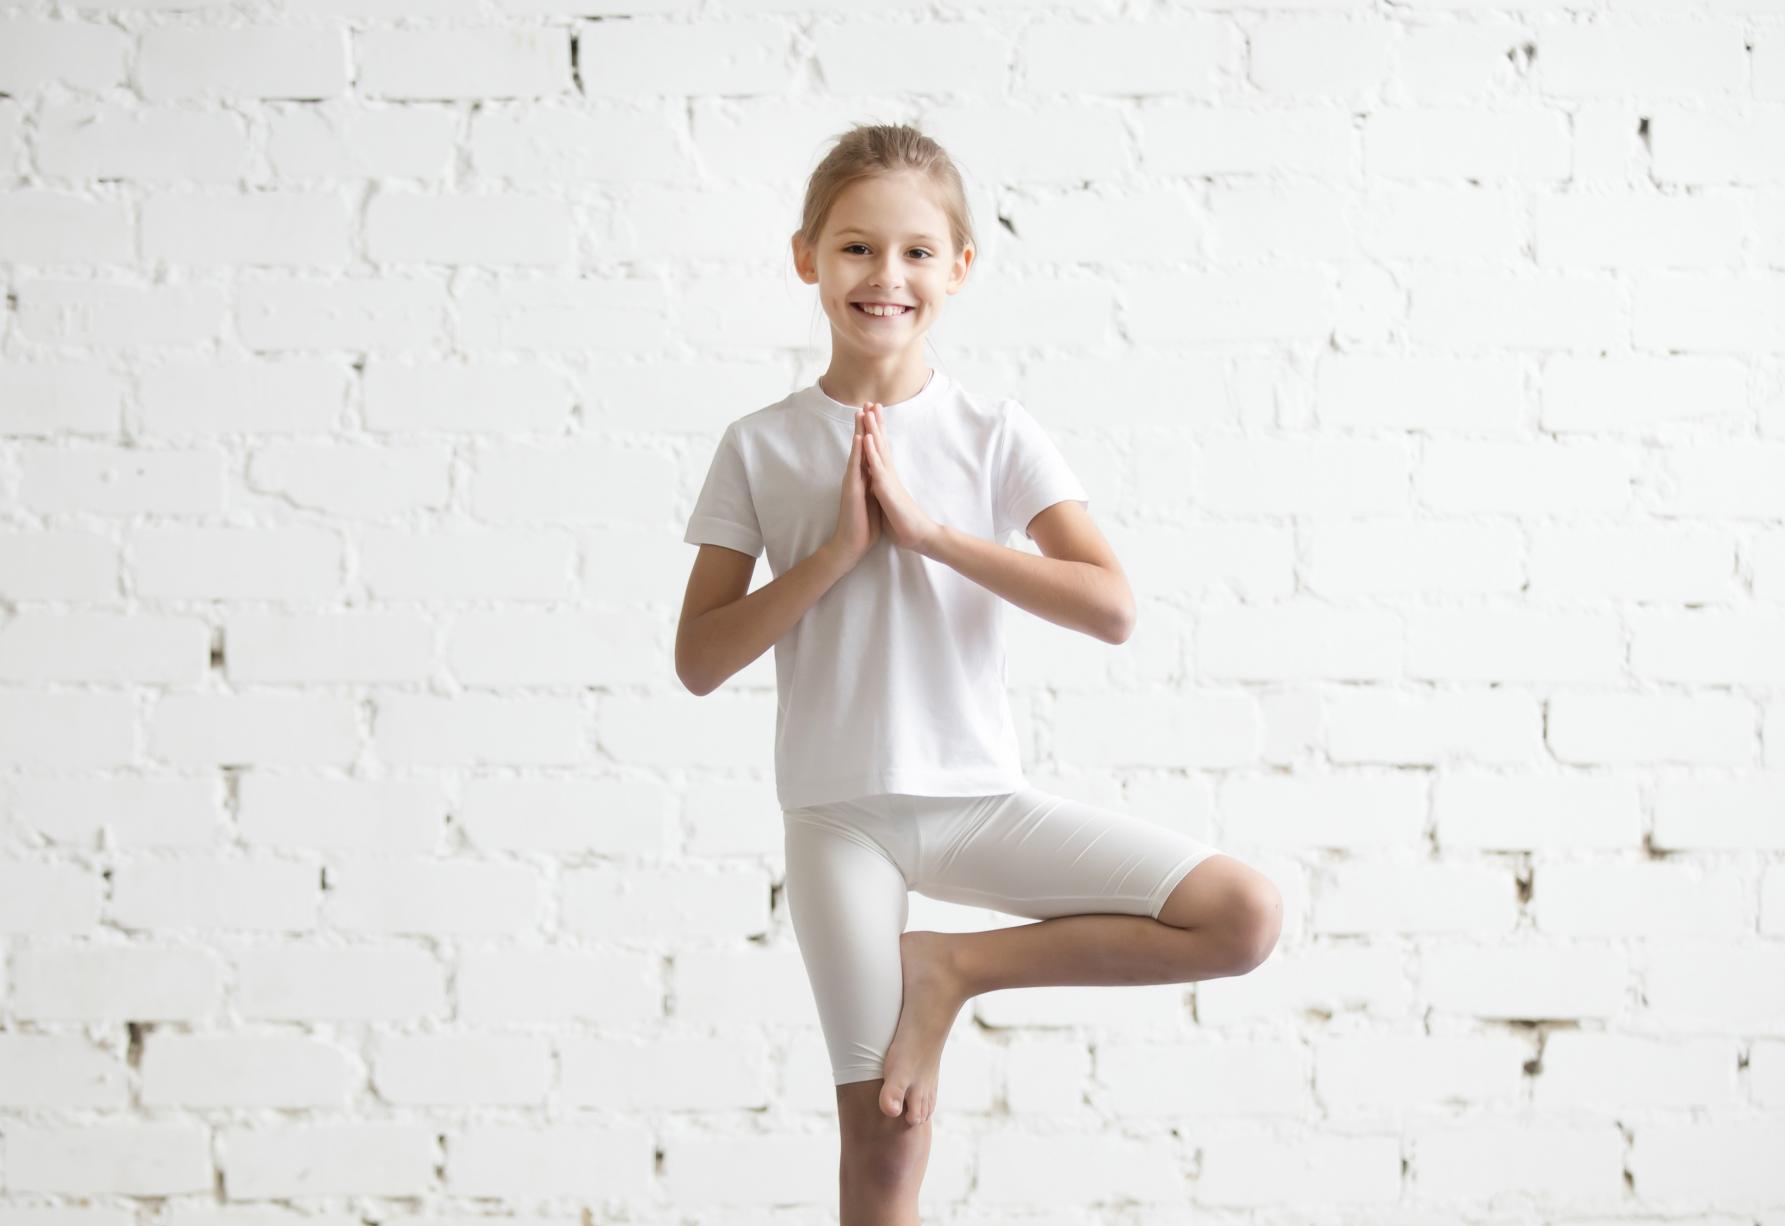 Nathaniel Ward Is Toegepast Yoga met kinderen | UiTinVlaanderen - UiTinVlaanderen